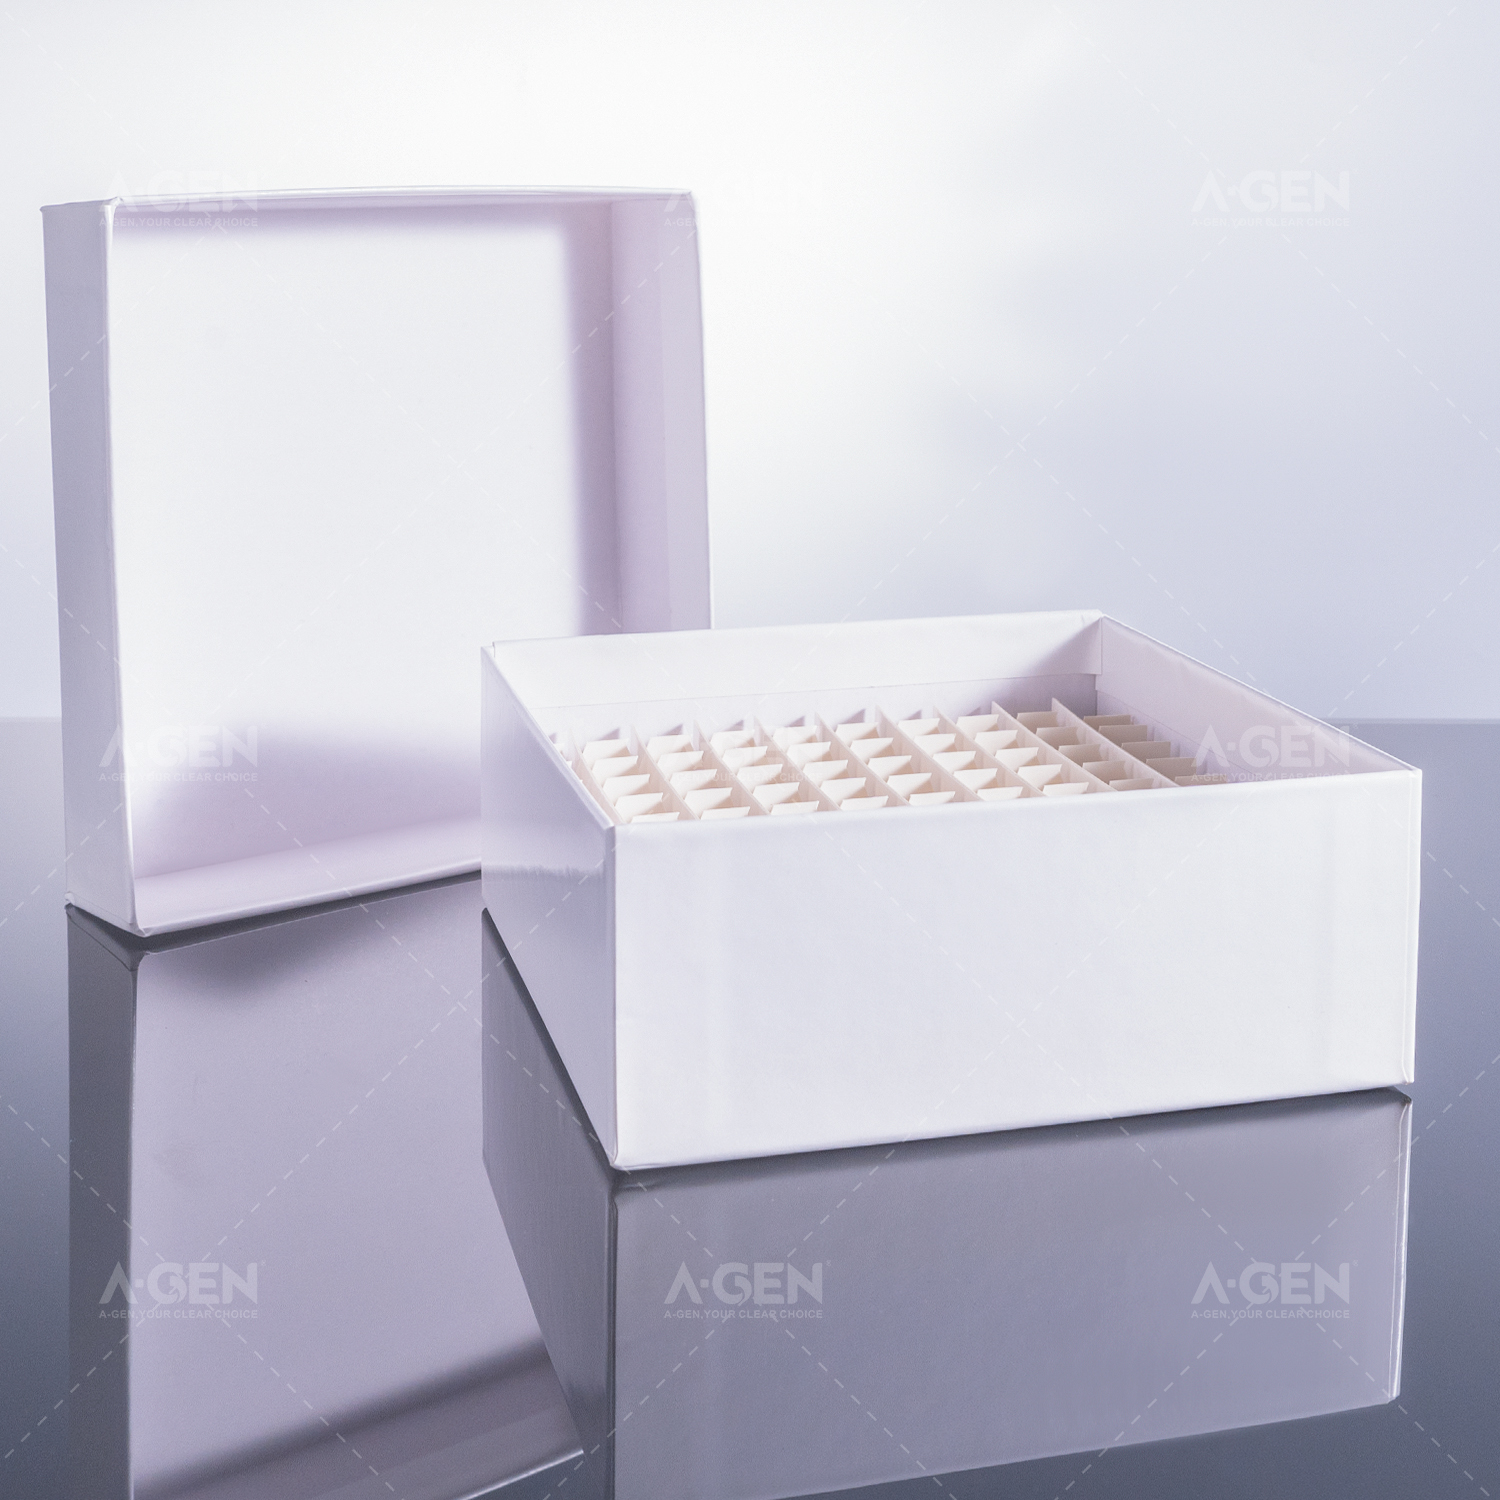 纸冻存盒133*133*36mm，适配0.5ml冻存管，白色